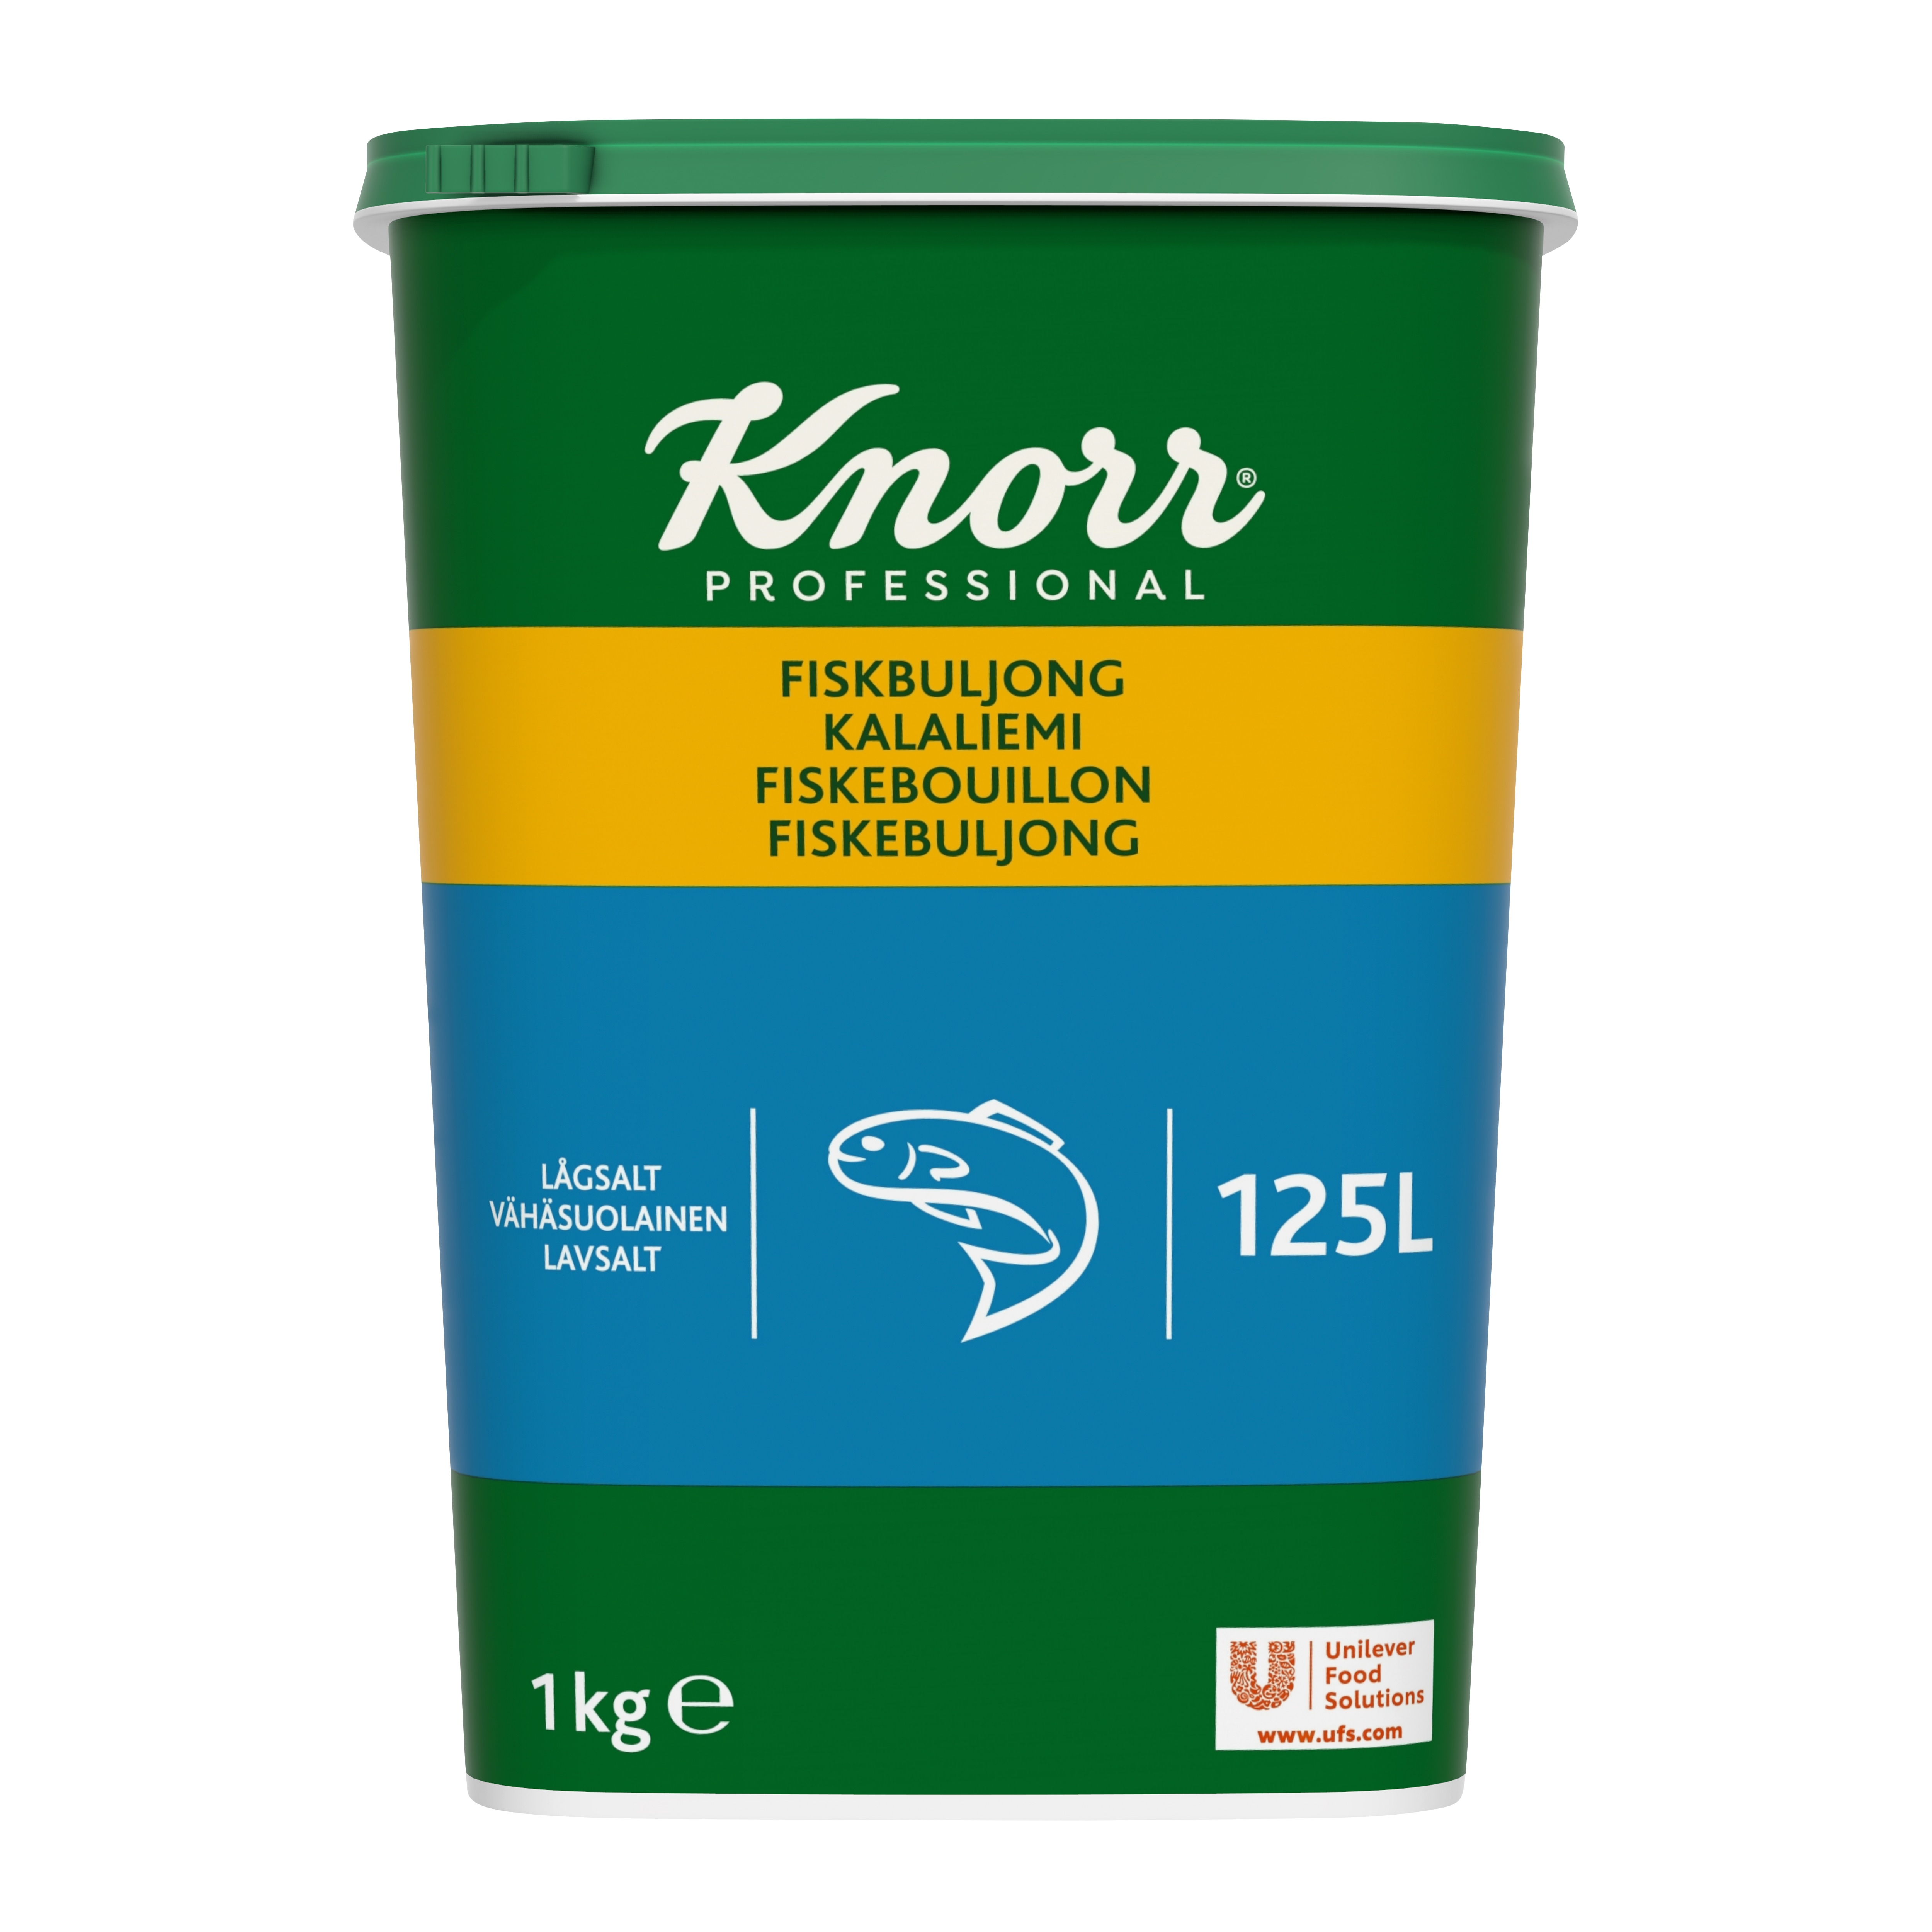 Knorr Fiskbuljong lågsalt 3x1kg - 